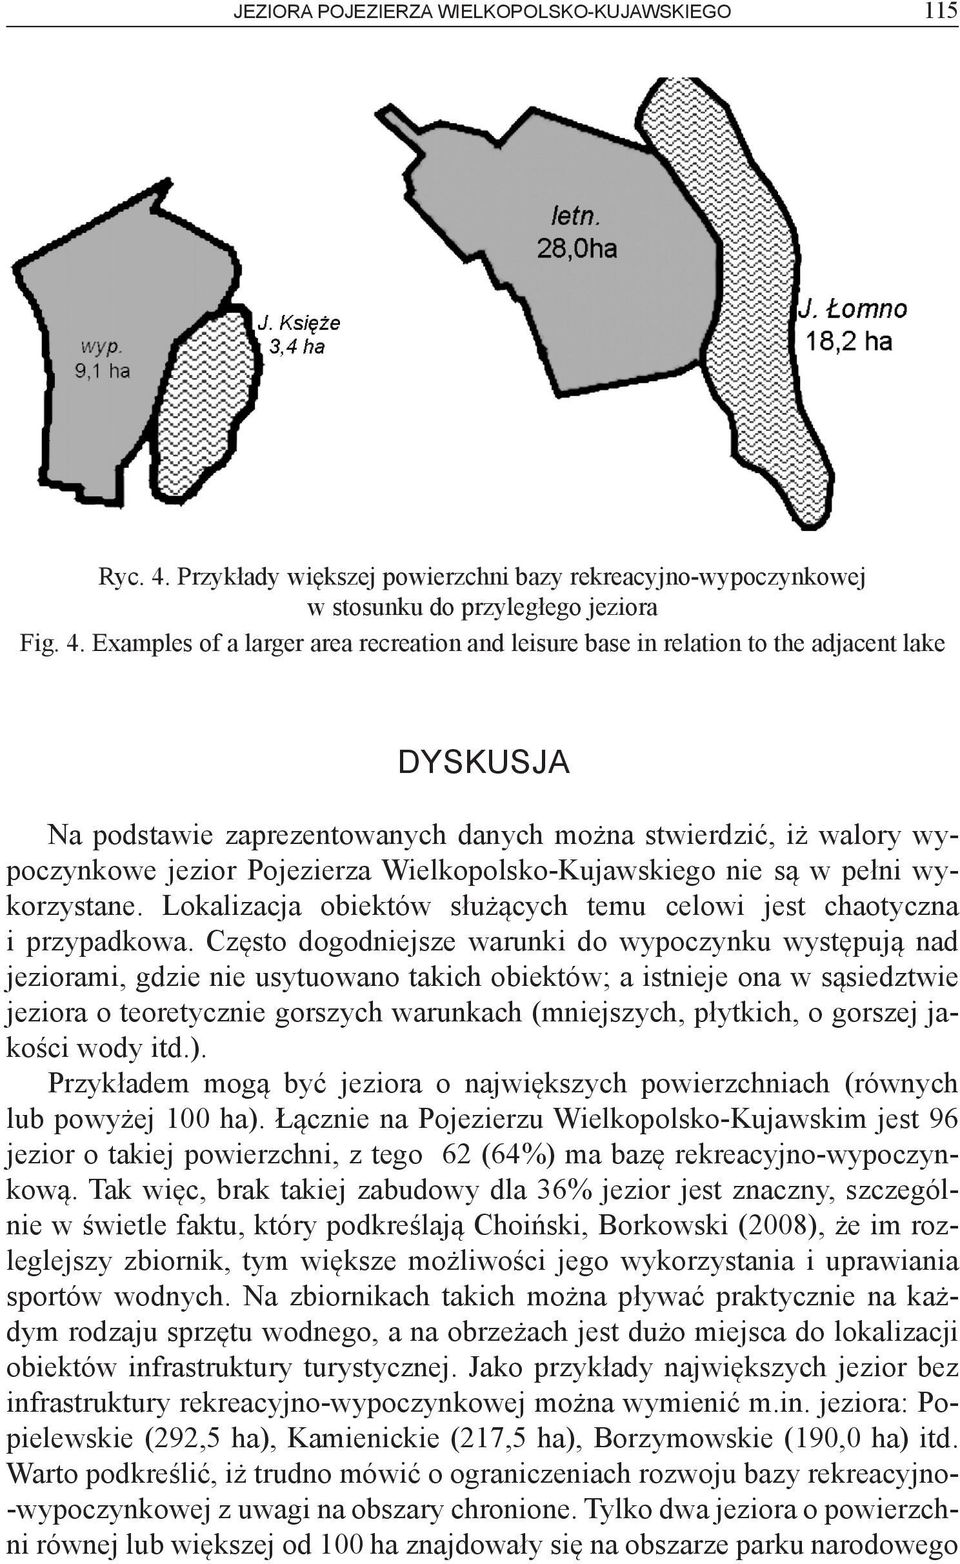 Examples of a larger area recreation and leisure base in relation to the adjacent lake DYSKUSJA Na podstawie zaprezentowanych danych można stwierdzić, iż walory wypoczynkowe jezior Pojezierza